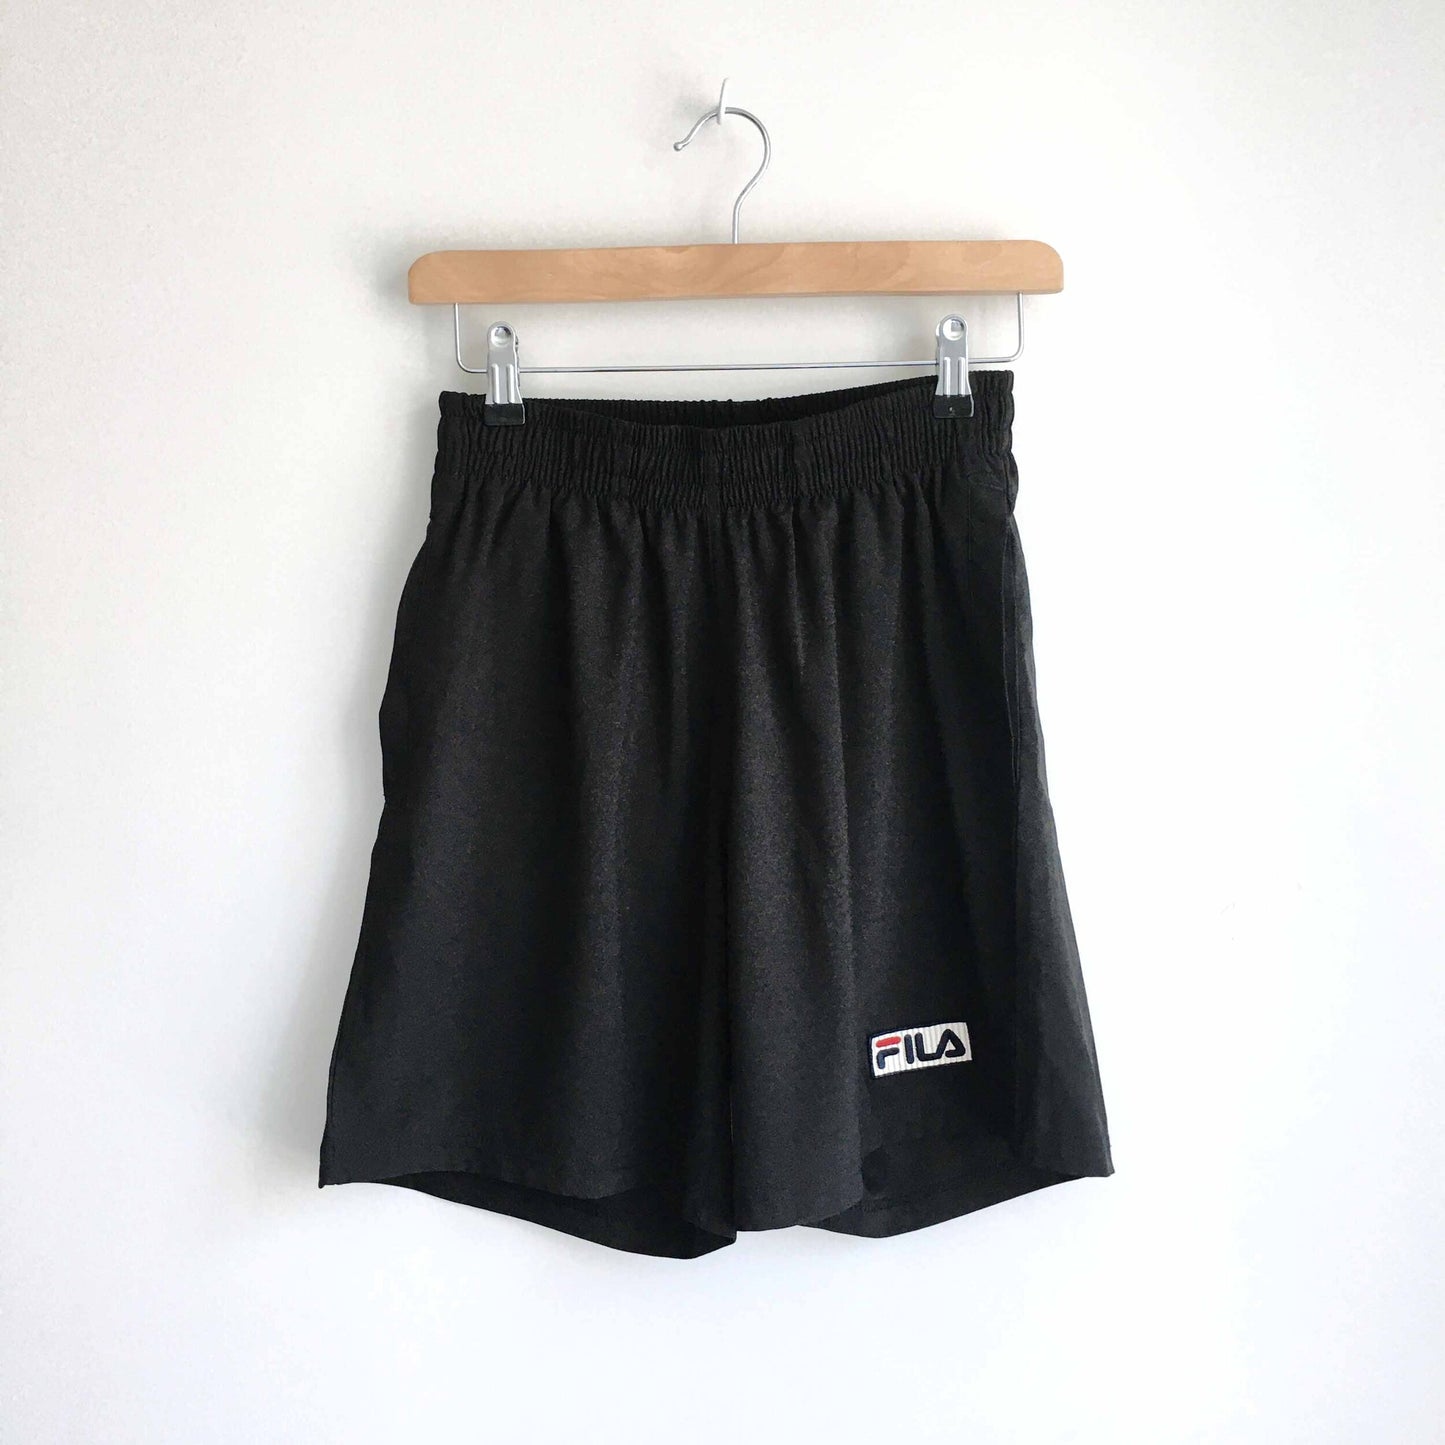 nwot fila tennis shorts - size xxs